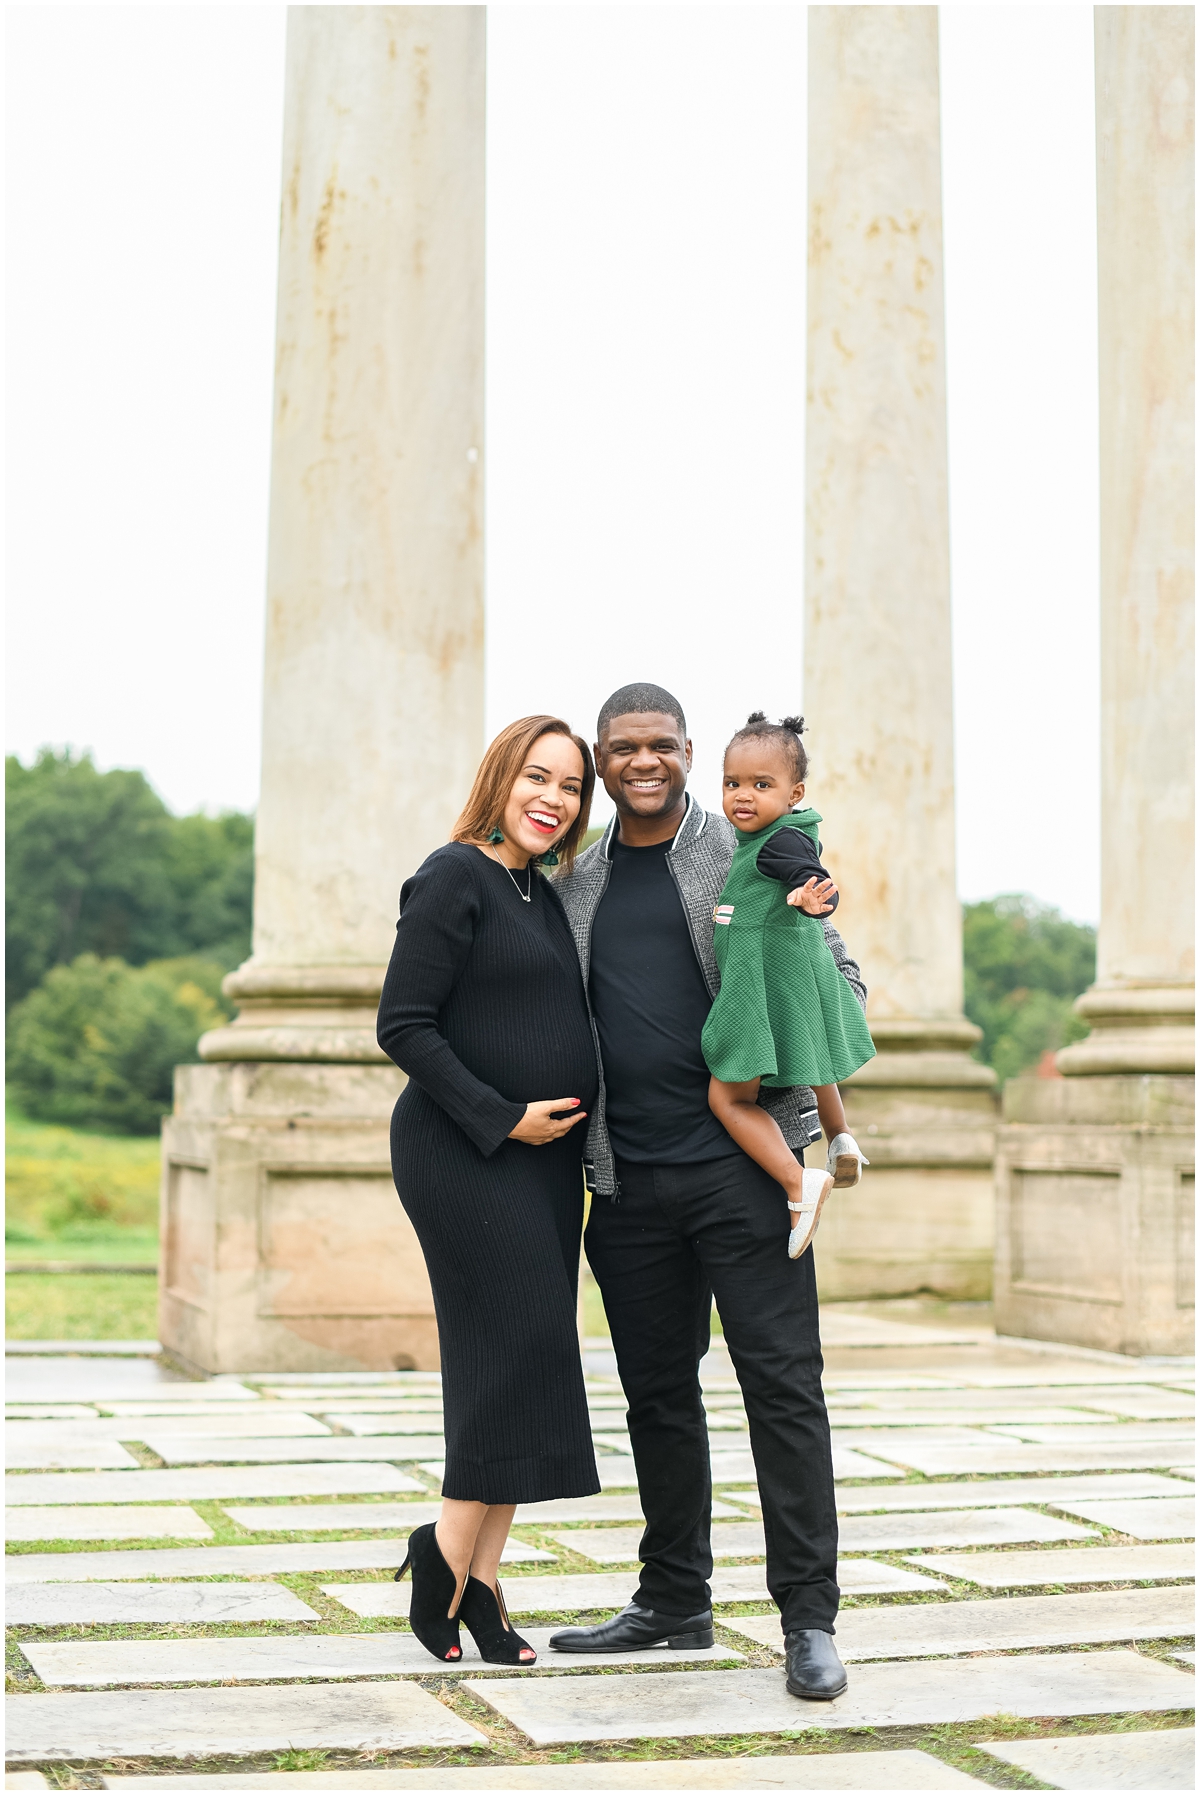 Family photographer in Washington, DC & San Antonio, TX